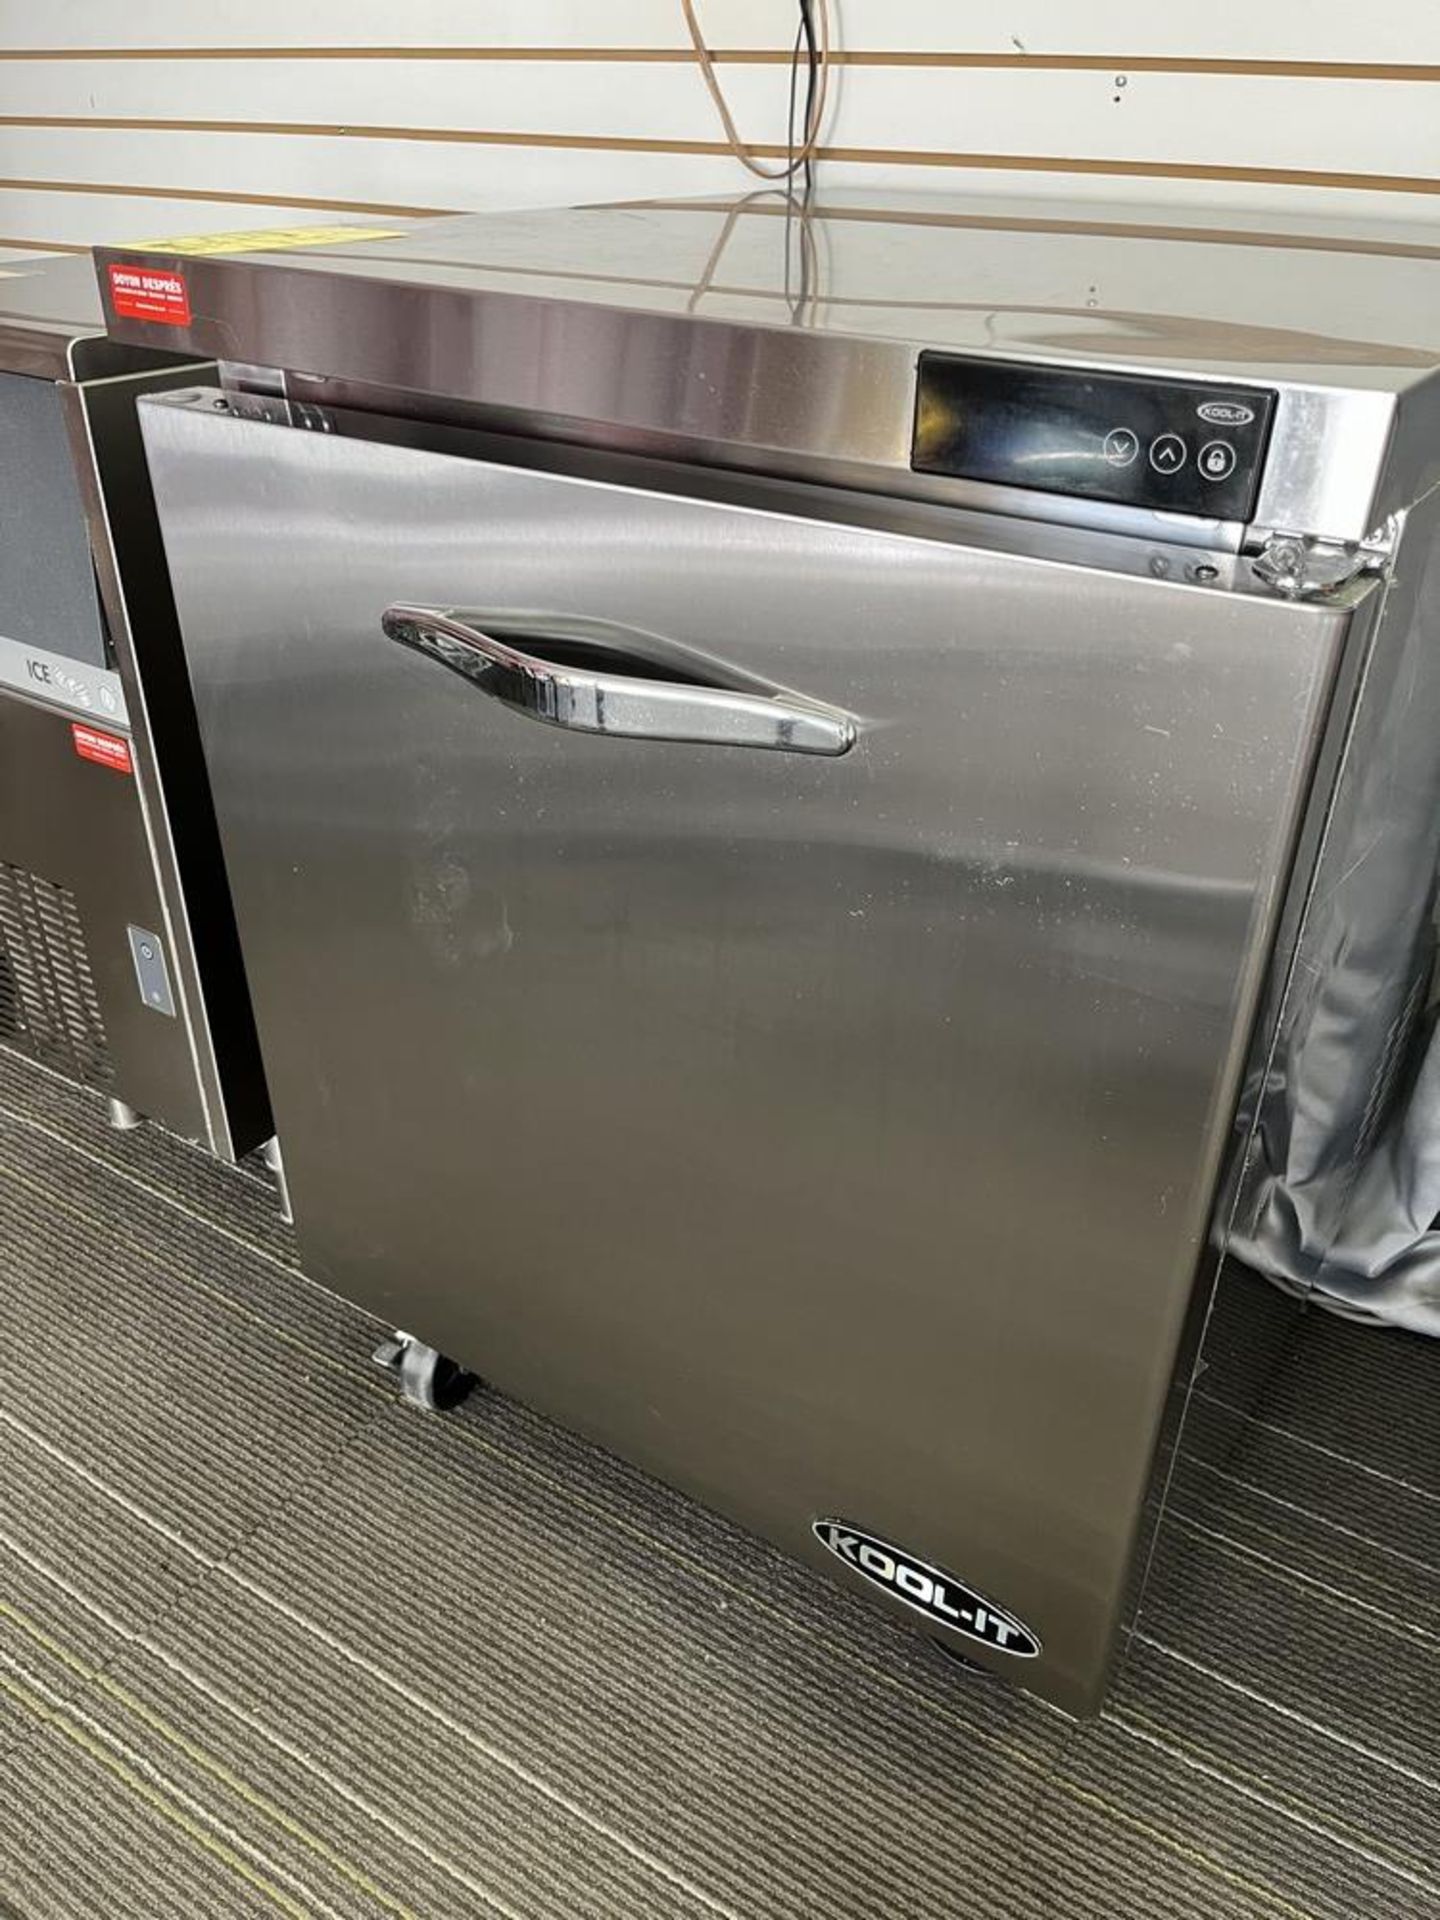 Réfrigérateur KOOL IT 1 porte, sous comptoir # KUC 27 - 1-MV sur roues - Image 2 of 4